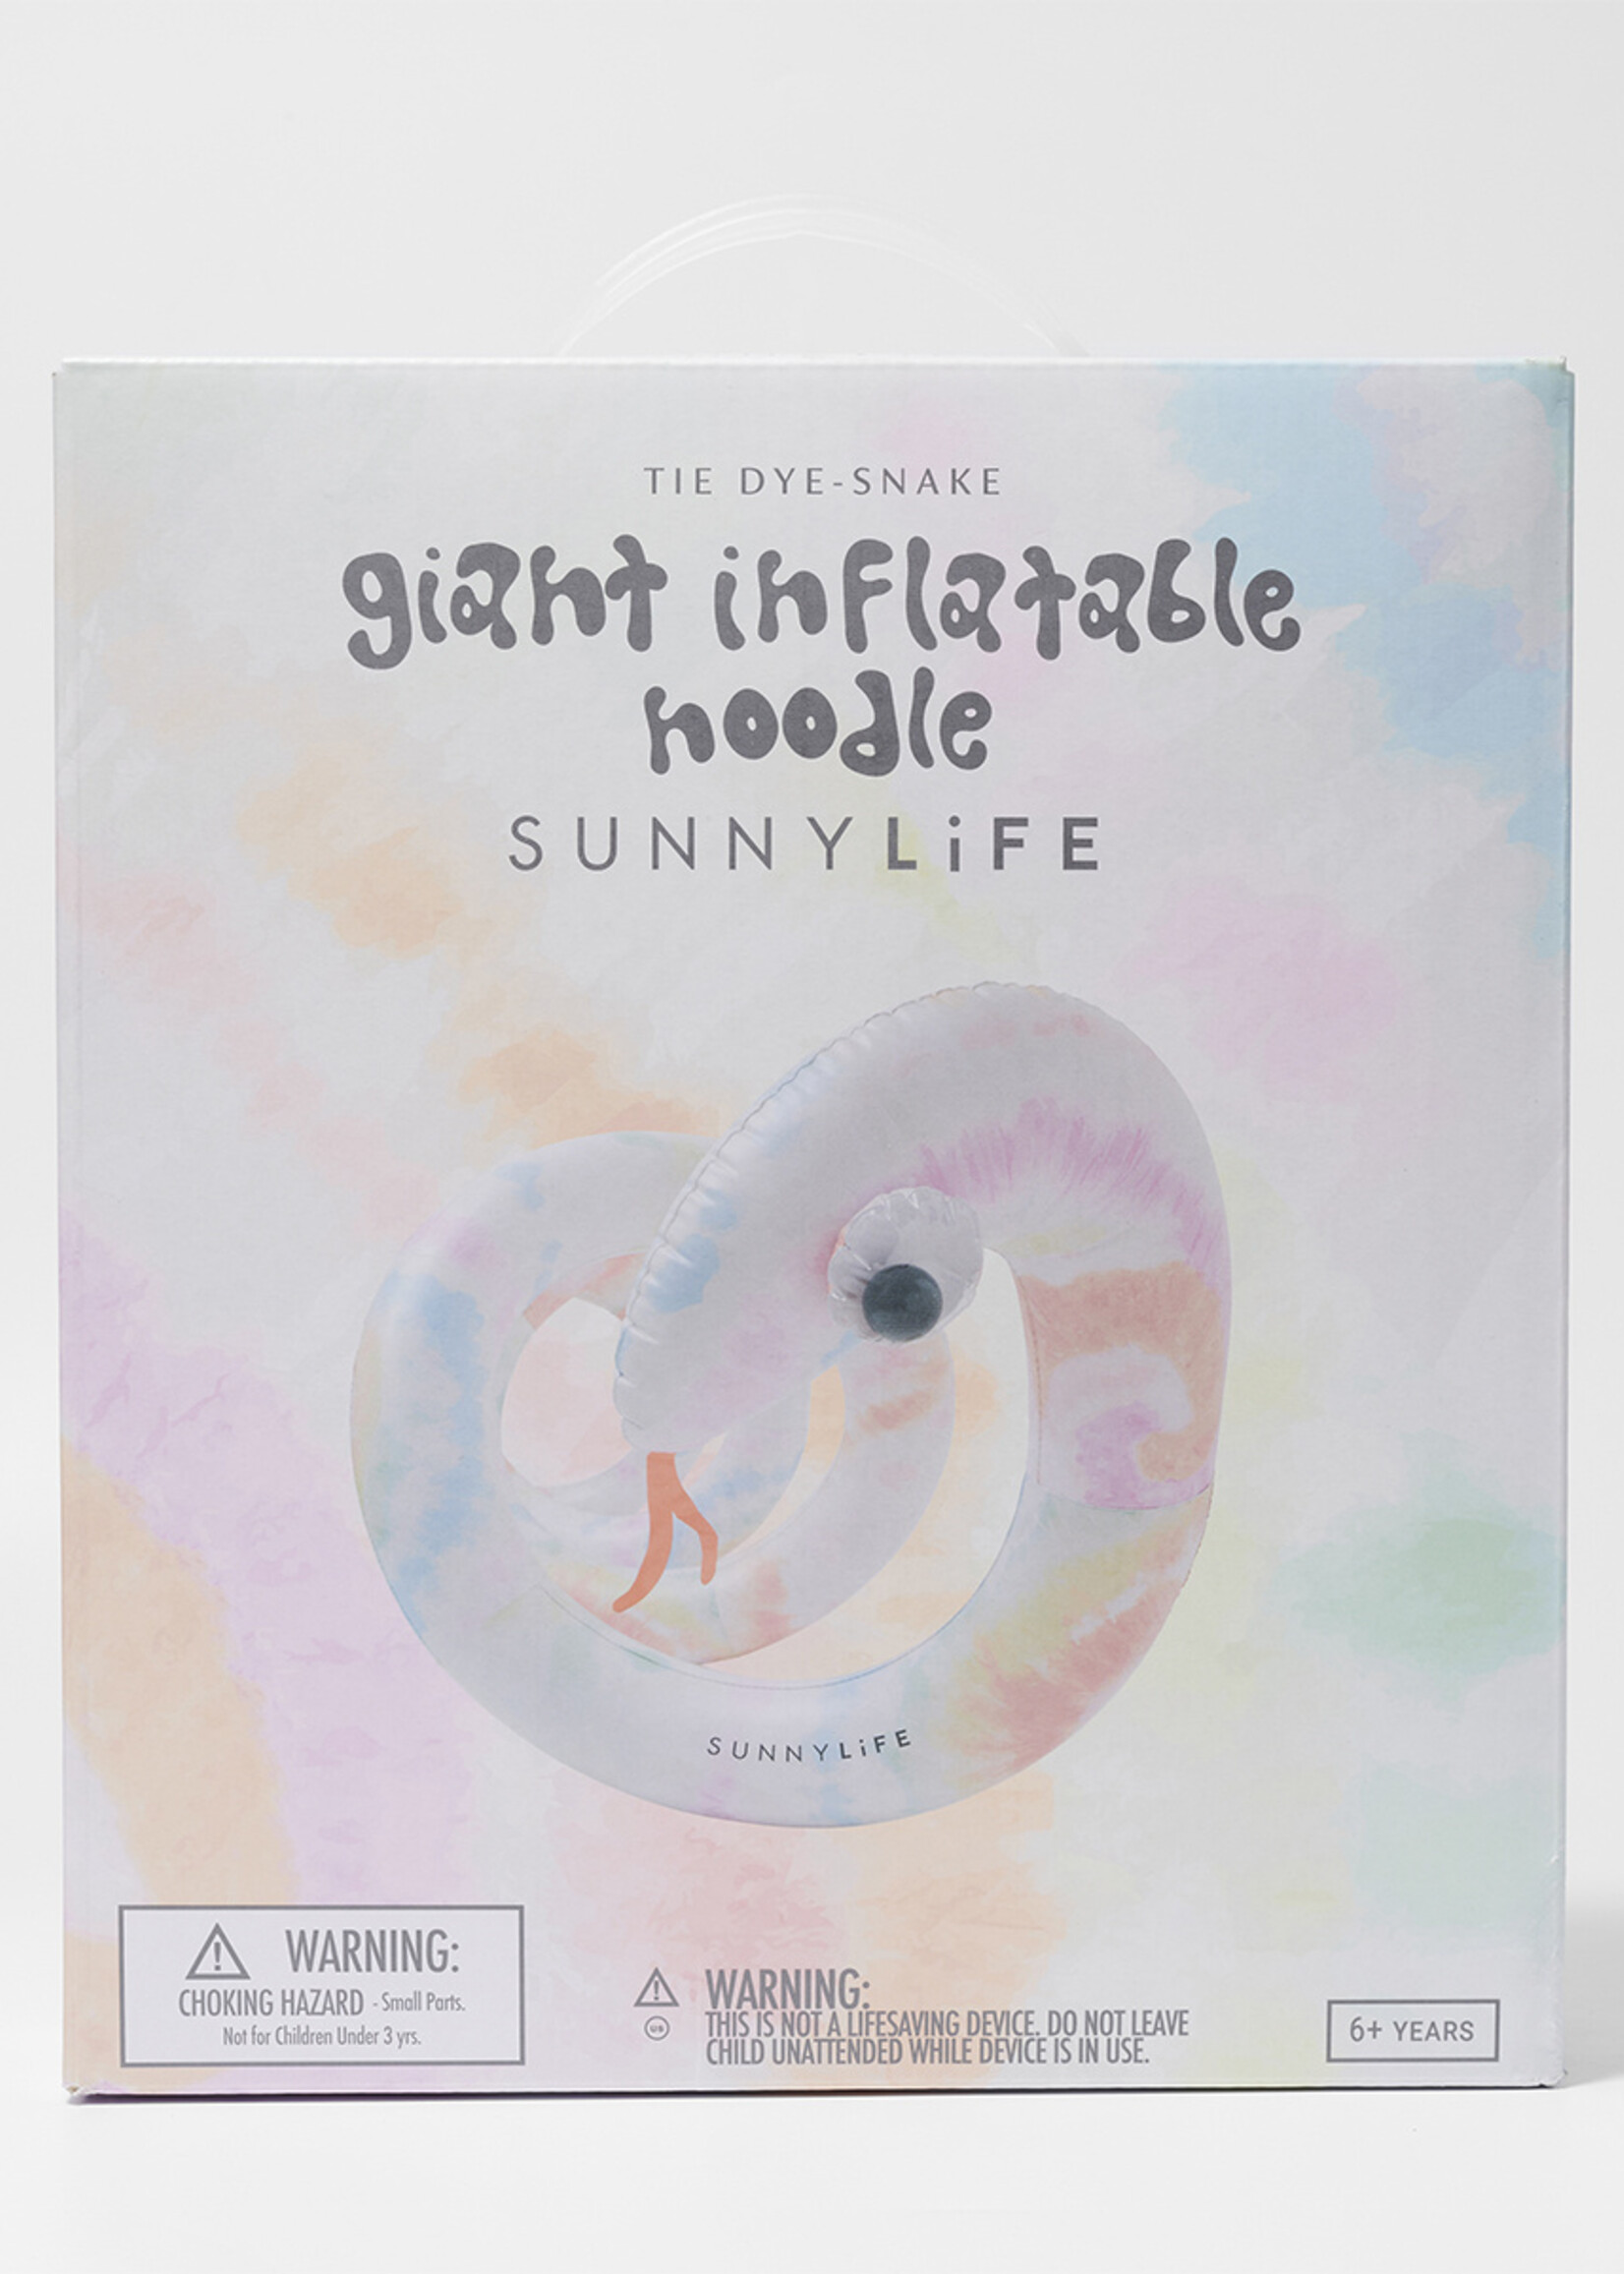 Sunnylife SunnyLife - Giant - Gonflable Noodle - Tie Dye - tuyau